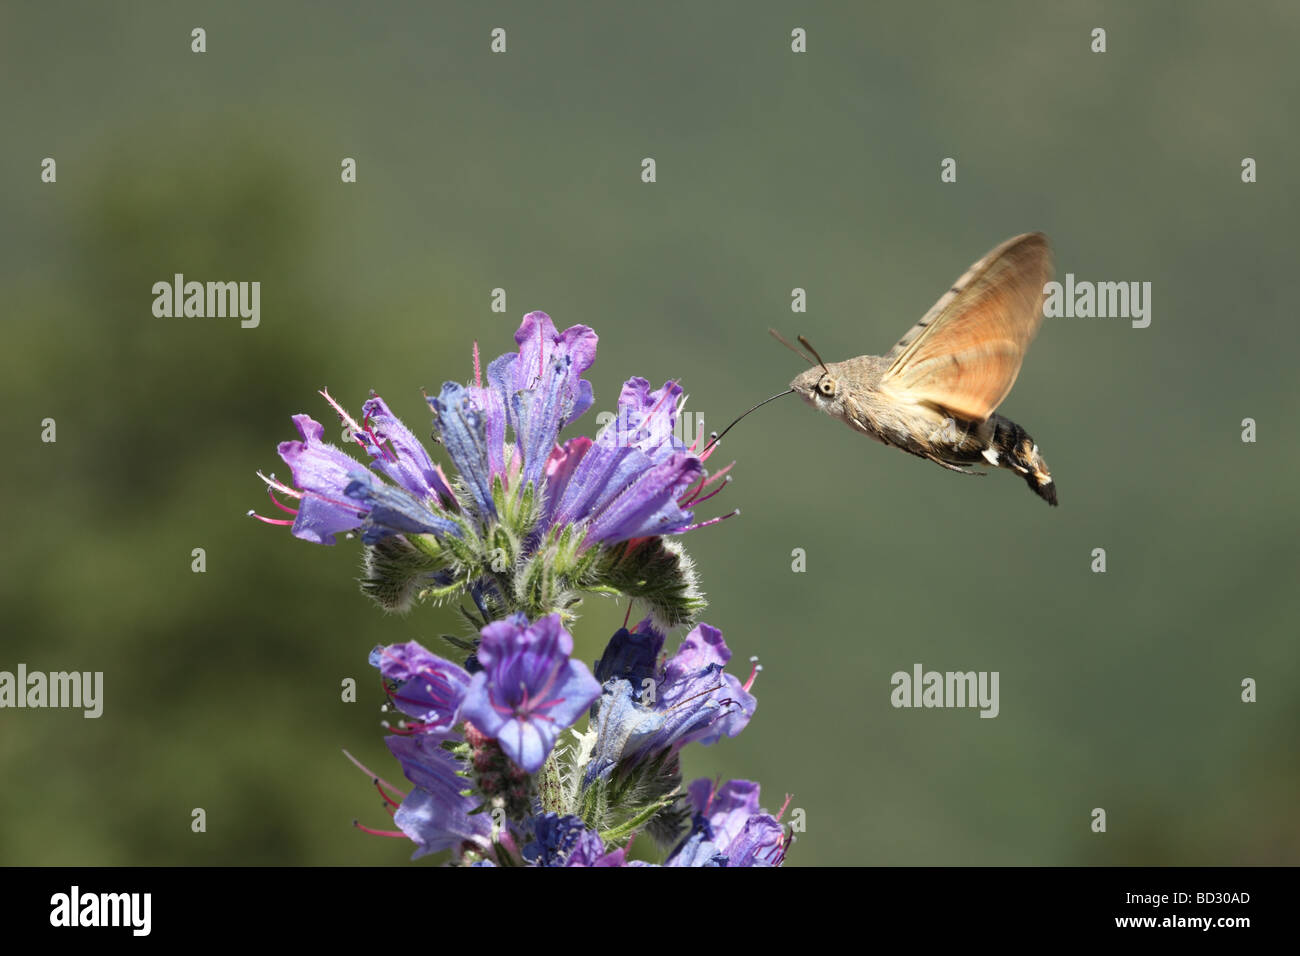 Humming-Bird Hawk-Moth Macroglossum Stellatarum Feeding on Vipers Bugloss Echium vulgare Stock Photo